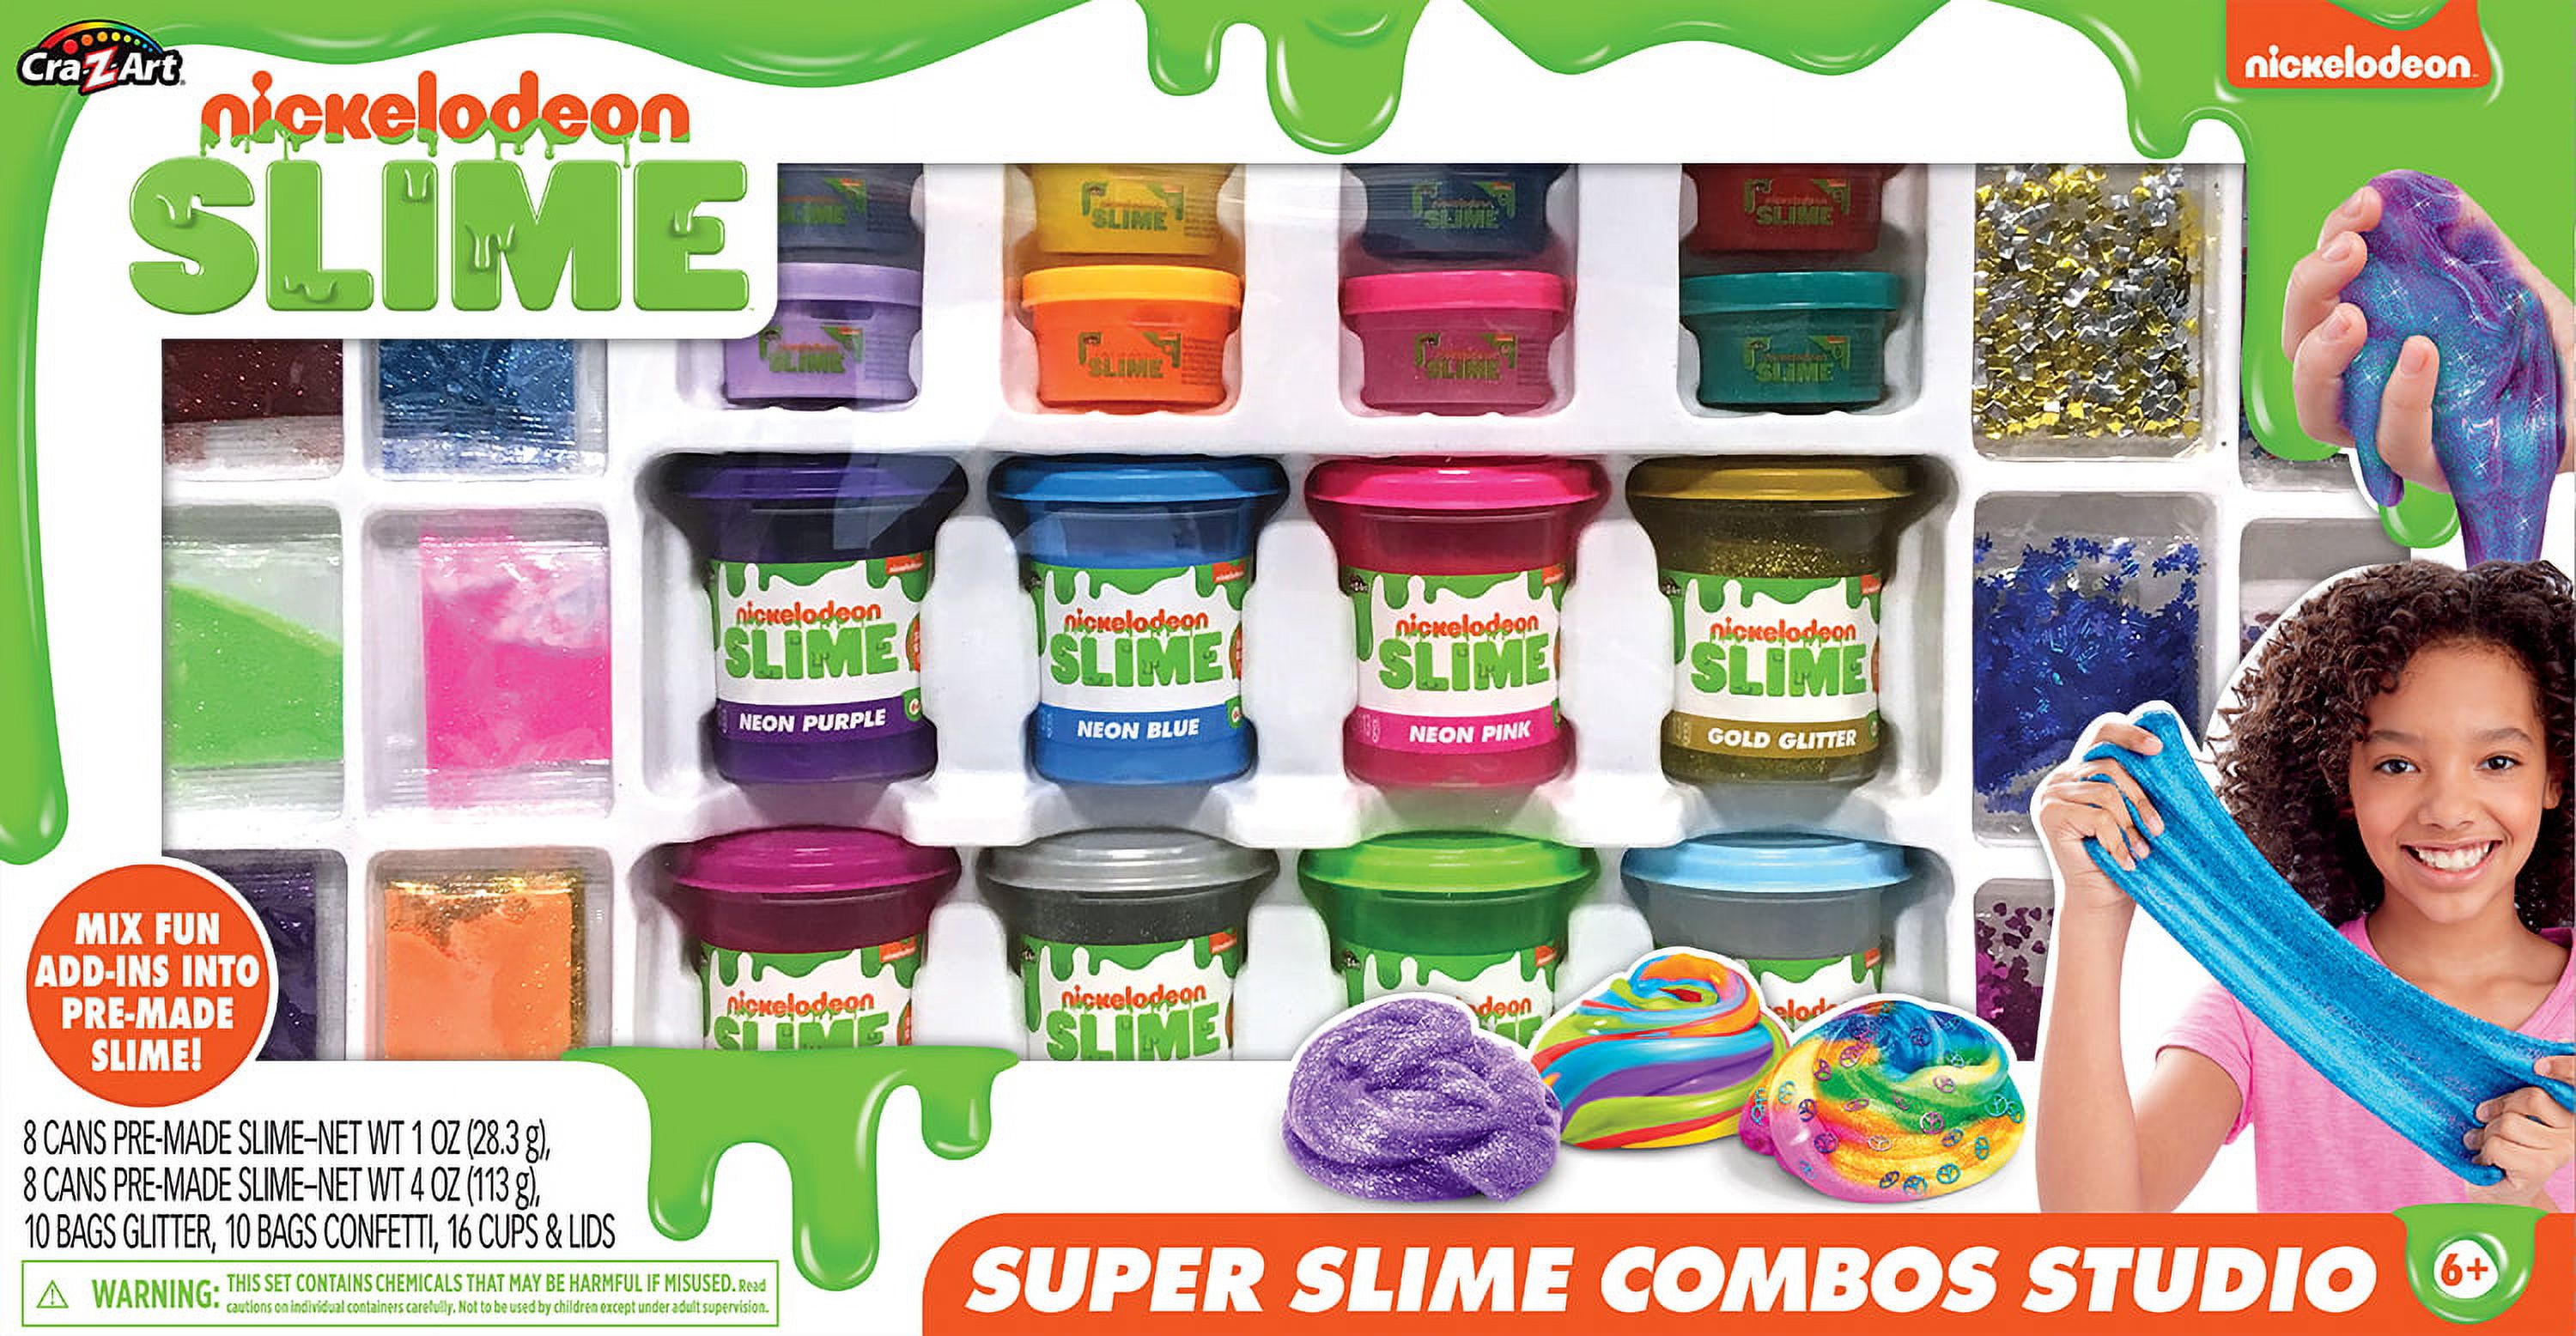 Cra-Z-Art Nickelodeon Super Slime Combos Studio - image 1 of 12